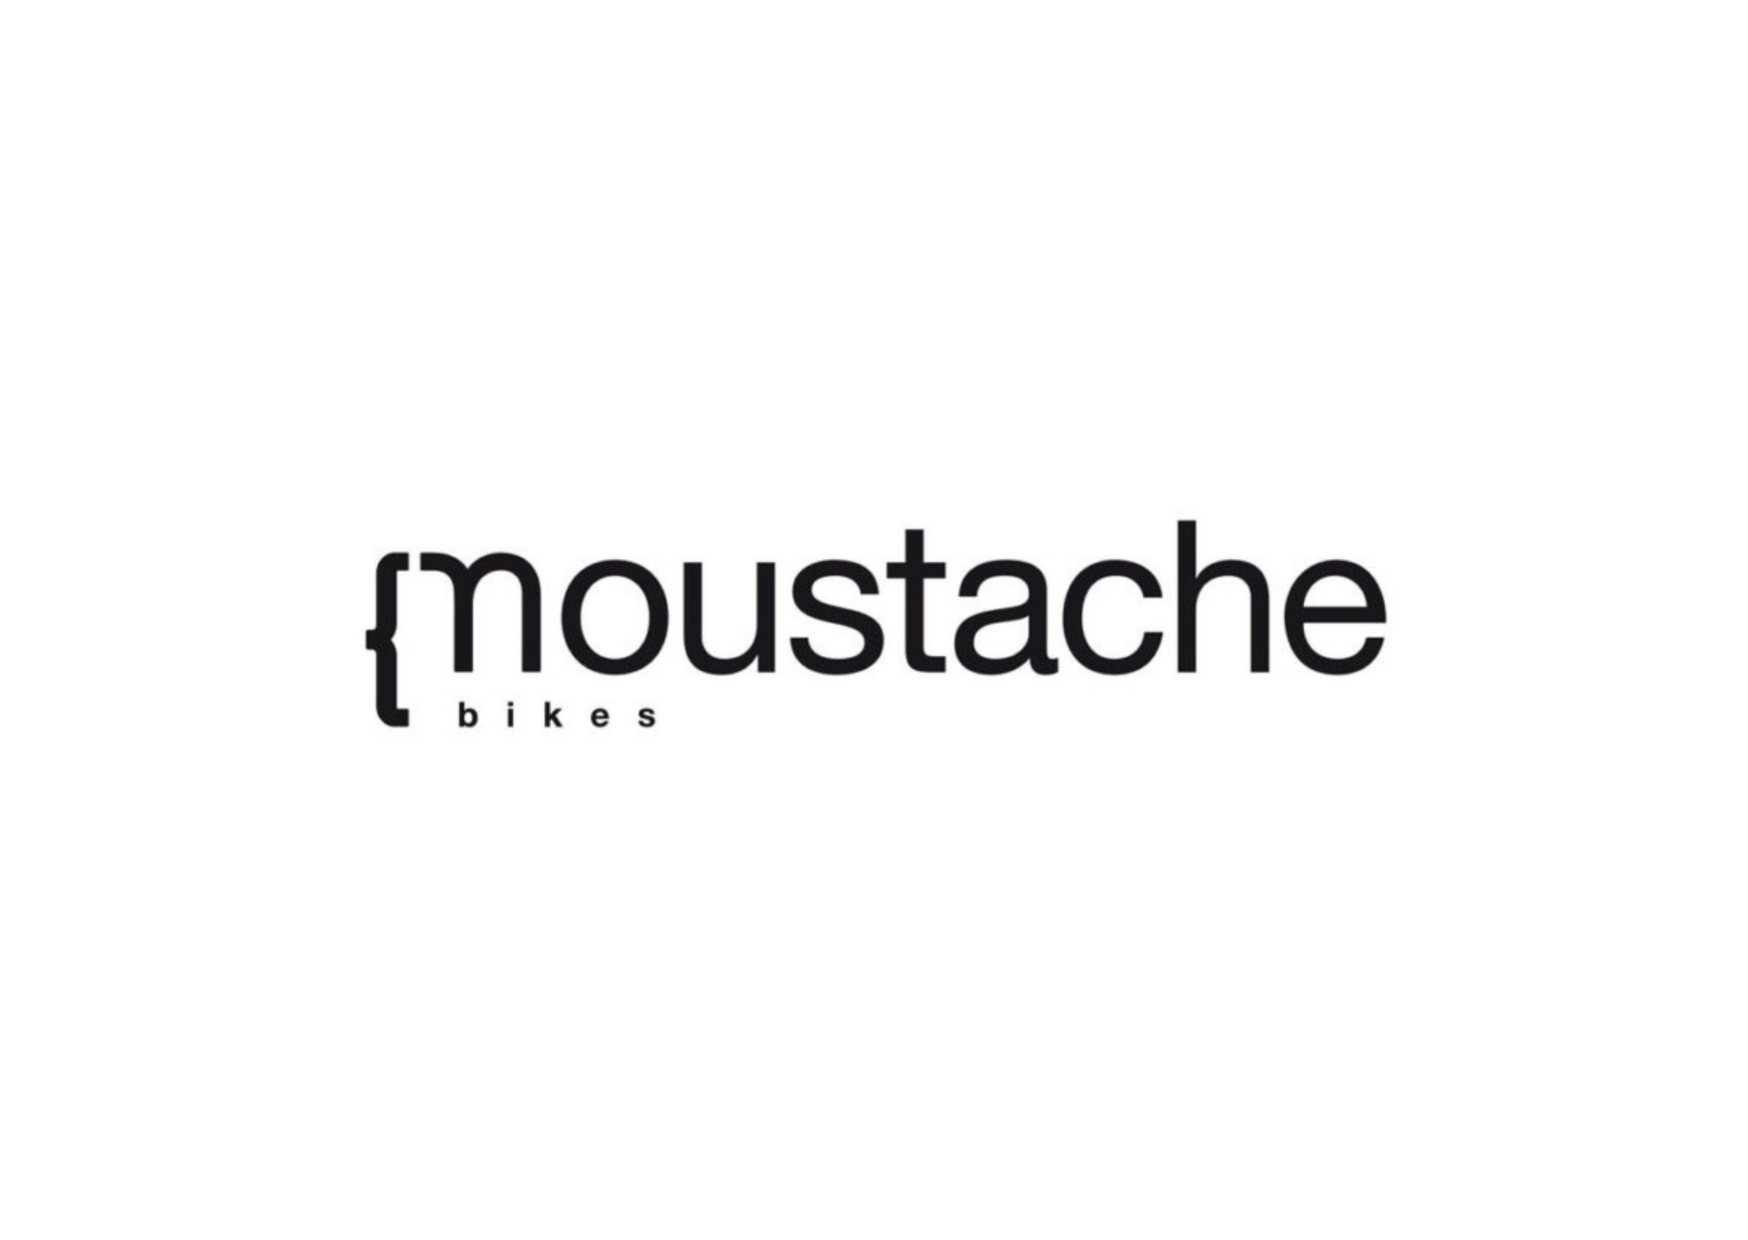 Logo moustache